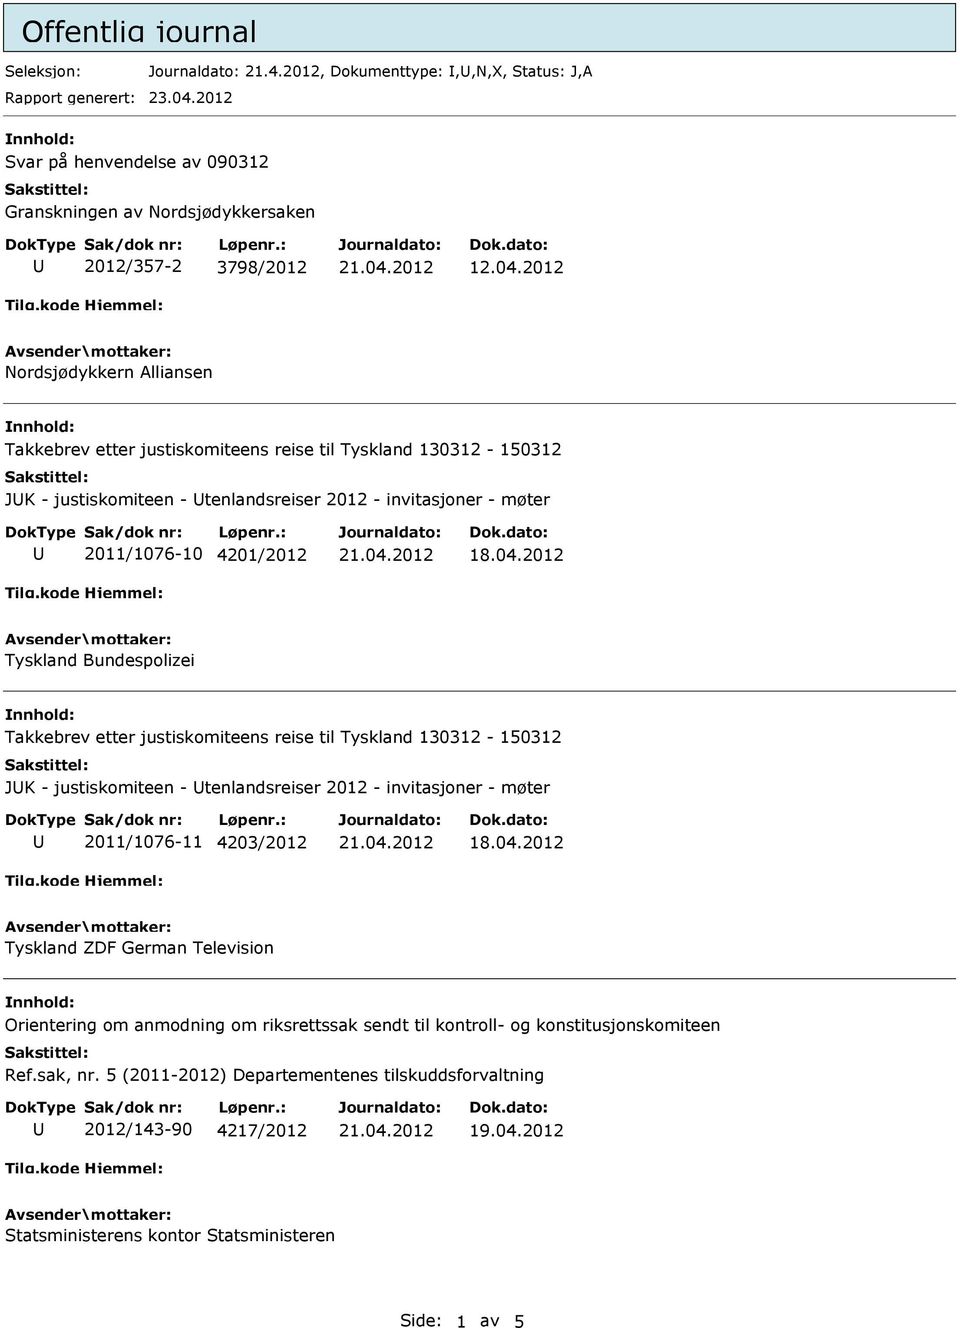 2012 Nordsjødykkern Alliansen JK - justiskomiteen - tenlandsreiser 2012 - invitasjoner - møter 2011/1076-10 4201/2012 Tyskland